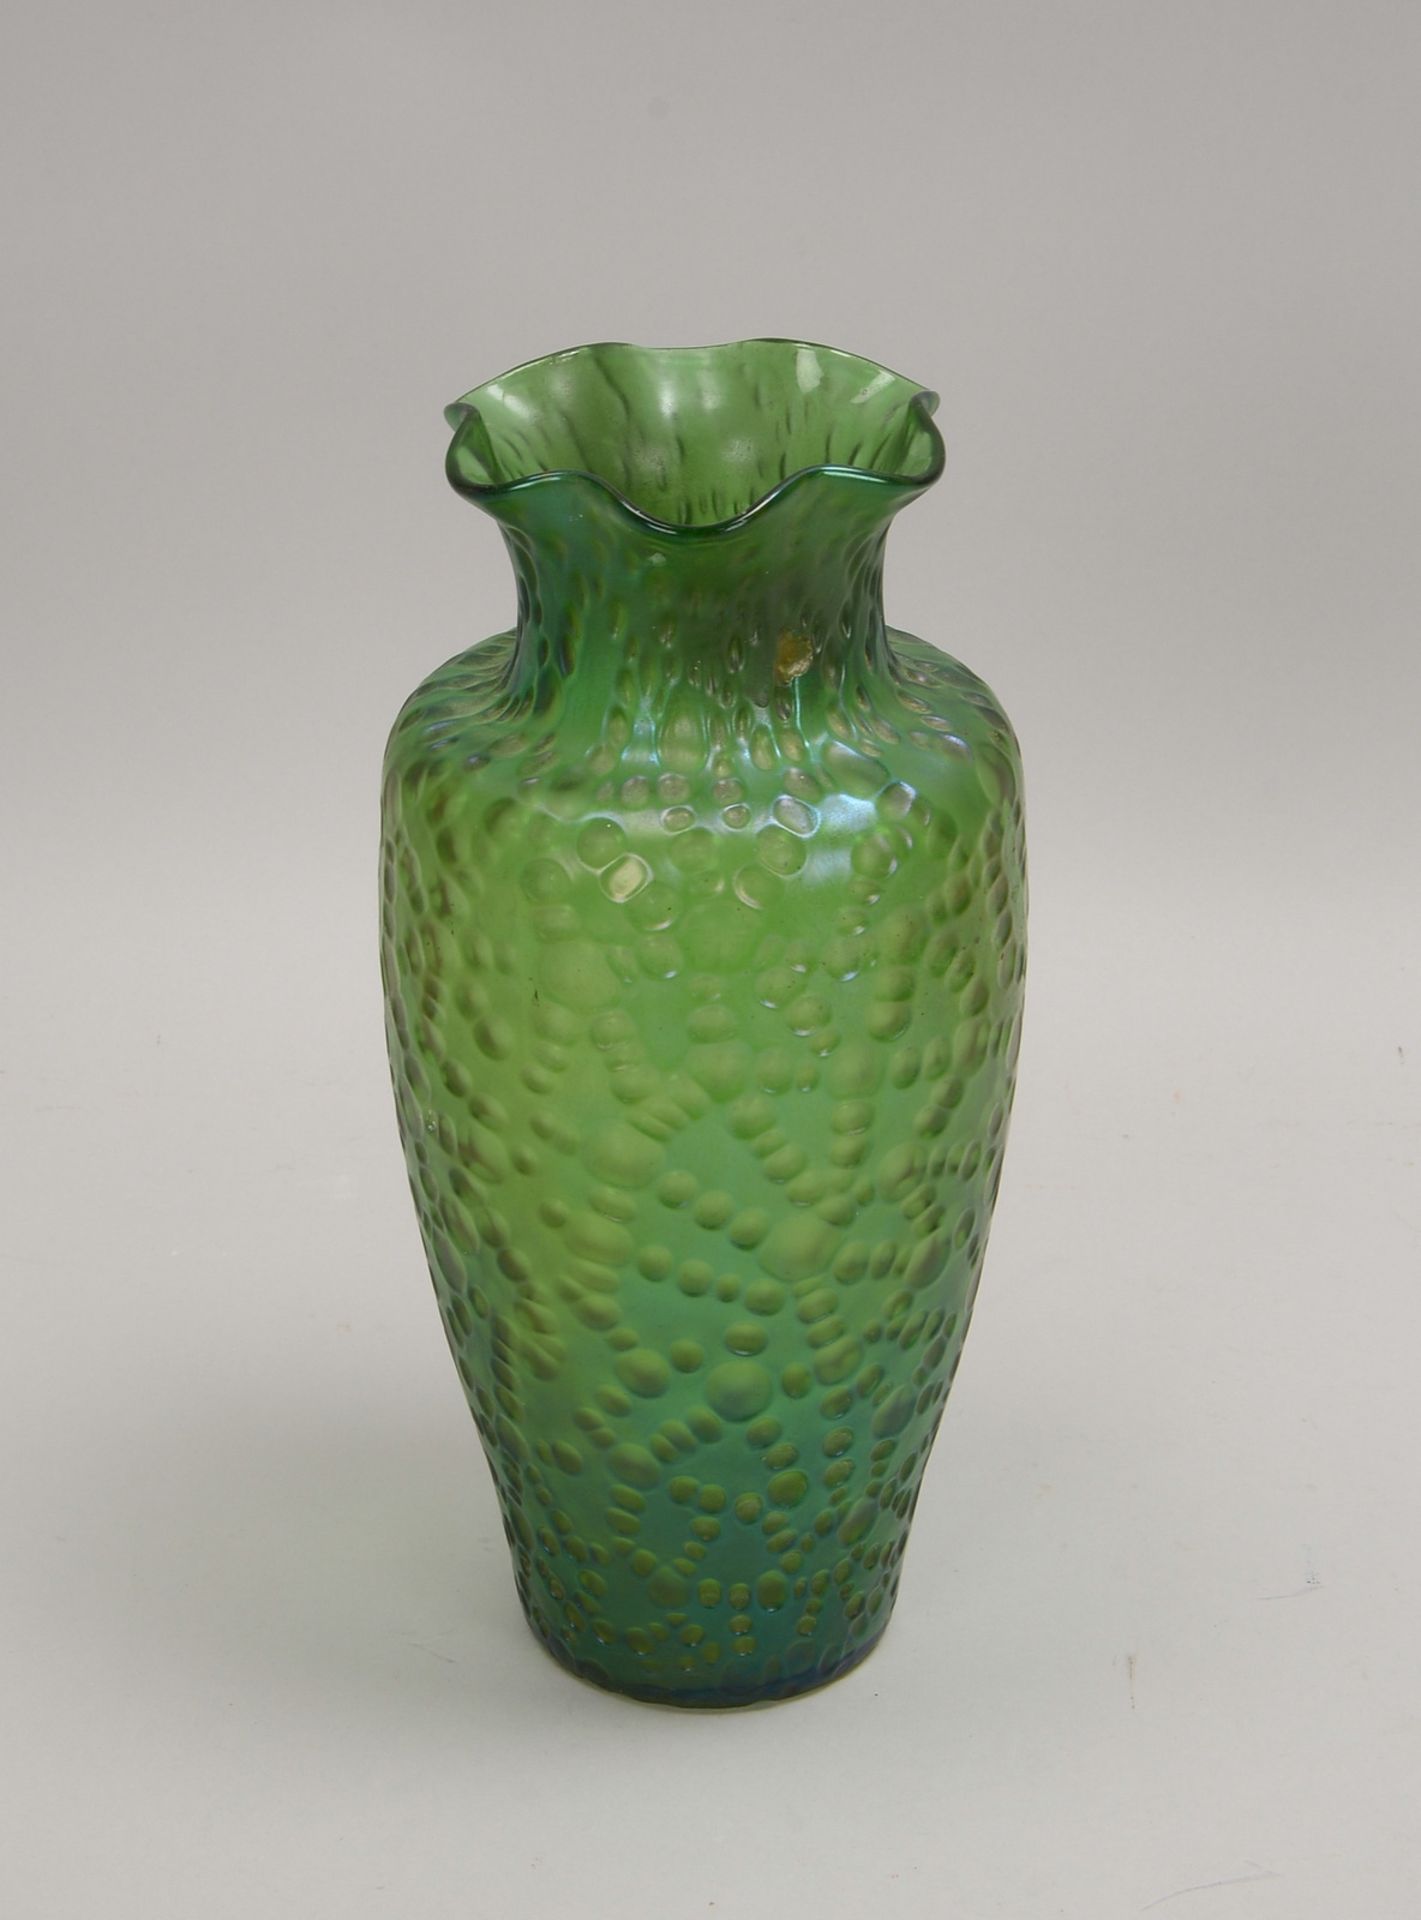 Glasvase, grünes leicht irisierendes Glas mit kraterf. Oberfläche, gewellter Rand, mit Abriss - Bild 2 aus 2